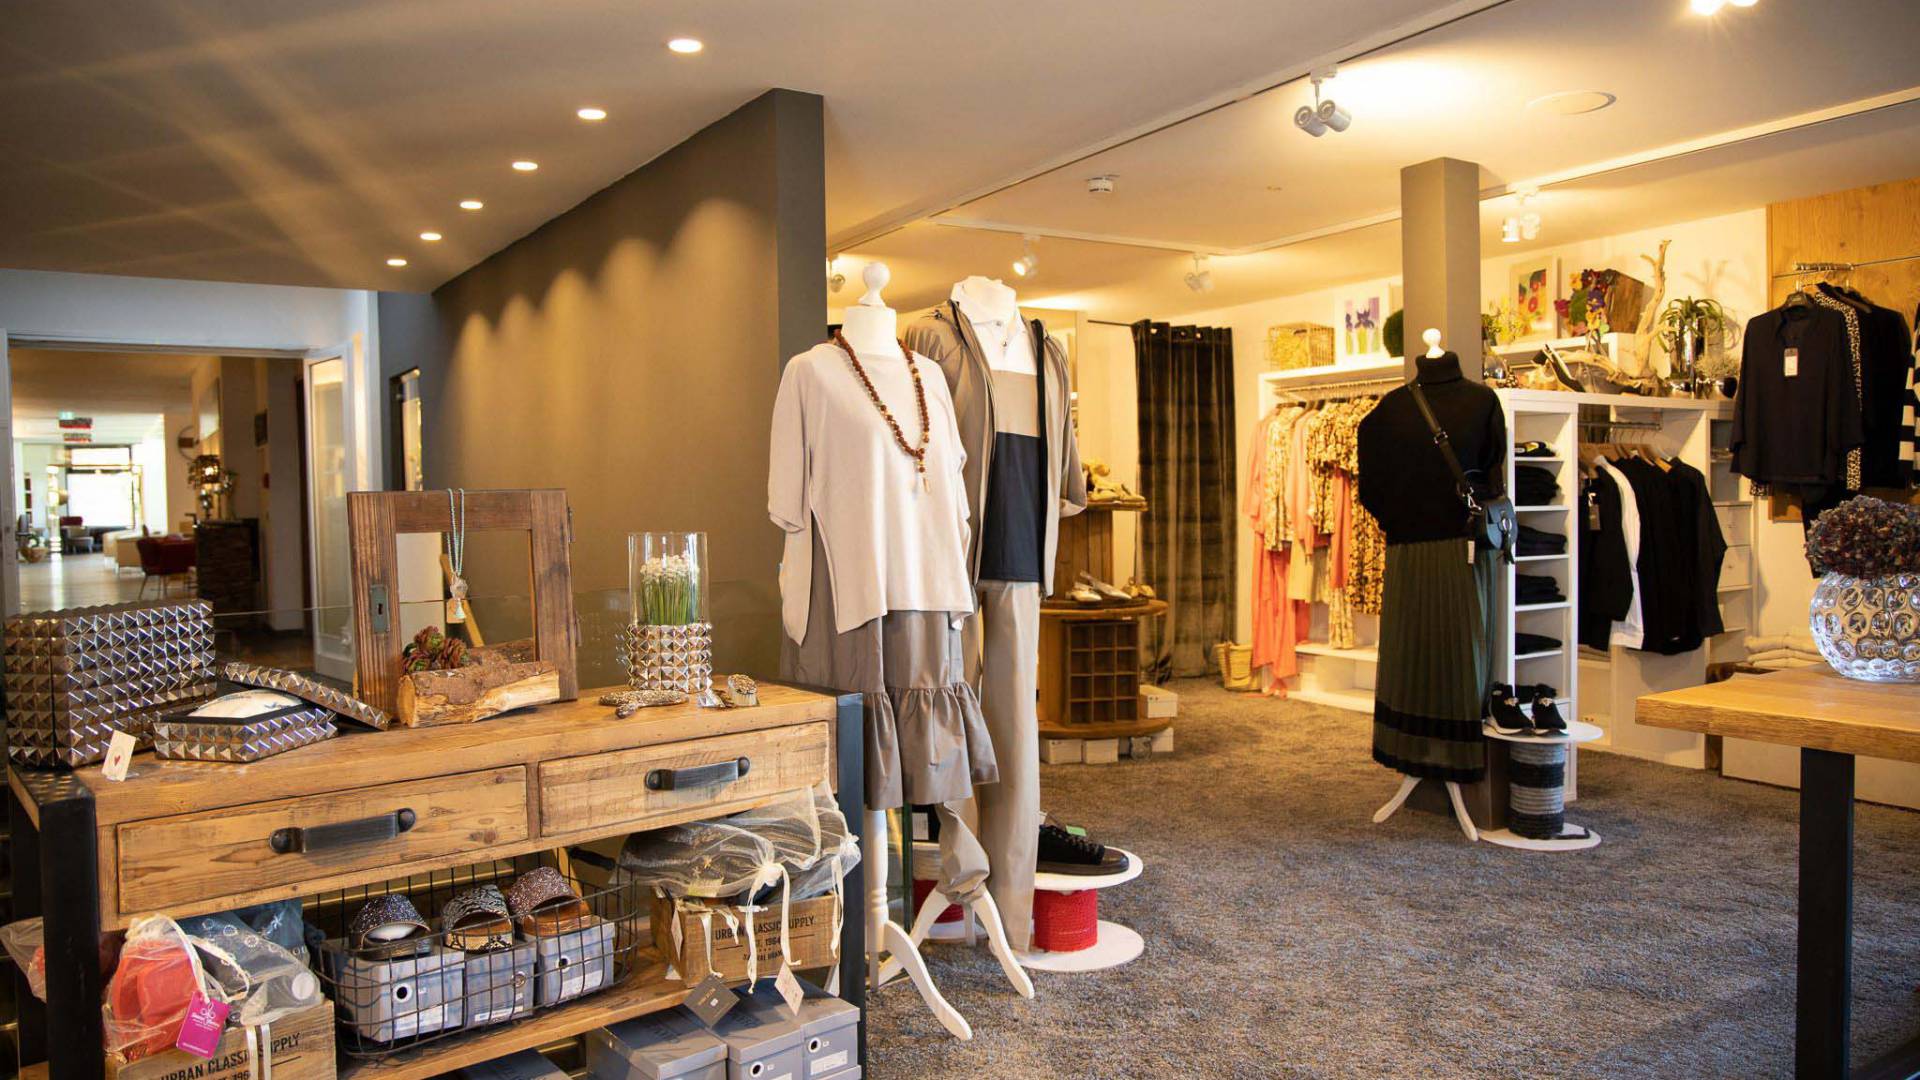 Eine gemütlich eingerichtete Boutique in welcher diverse Kleidungsstücke und Accessoires ausgestellt sind.